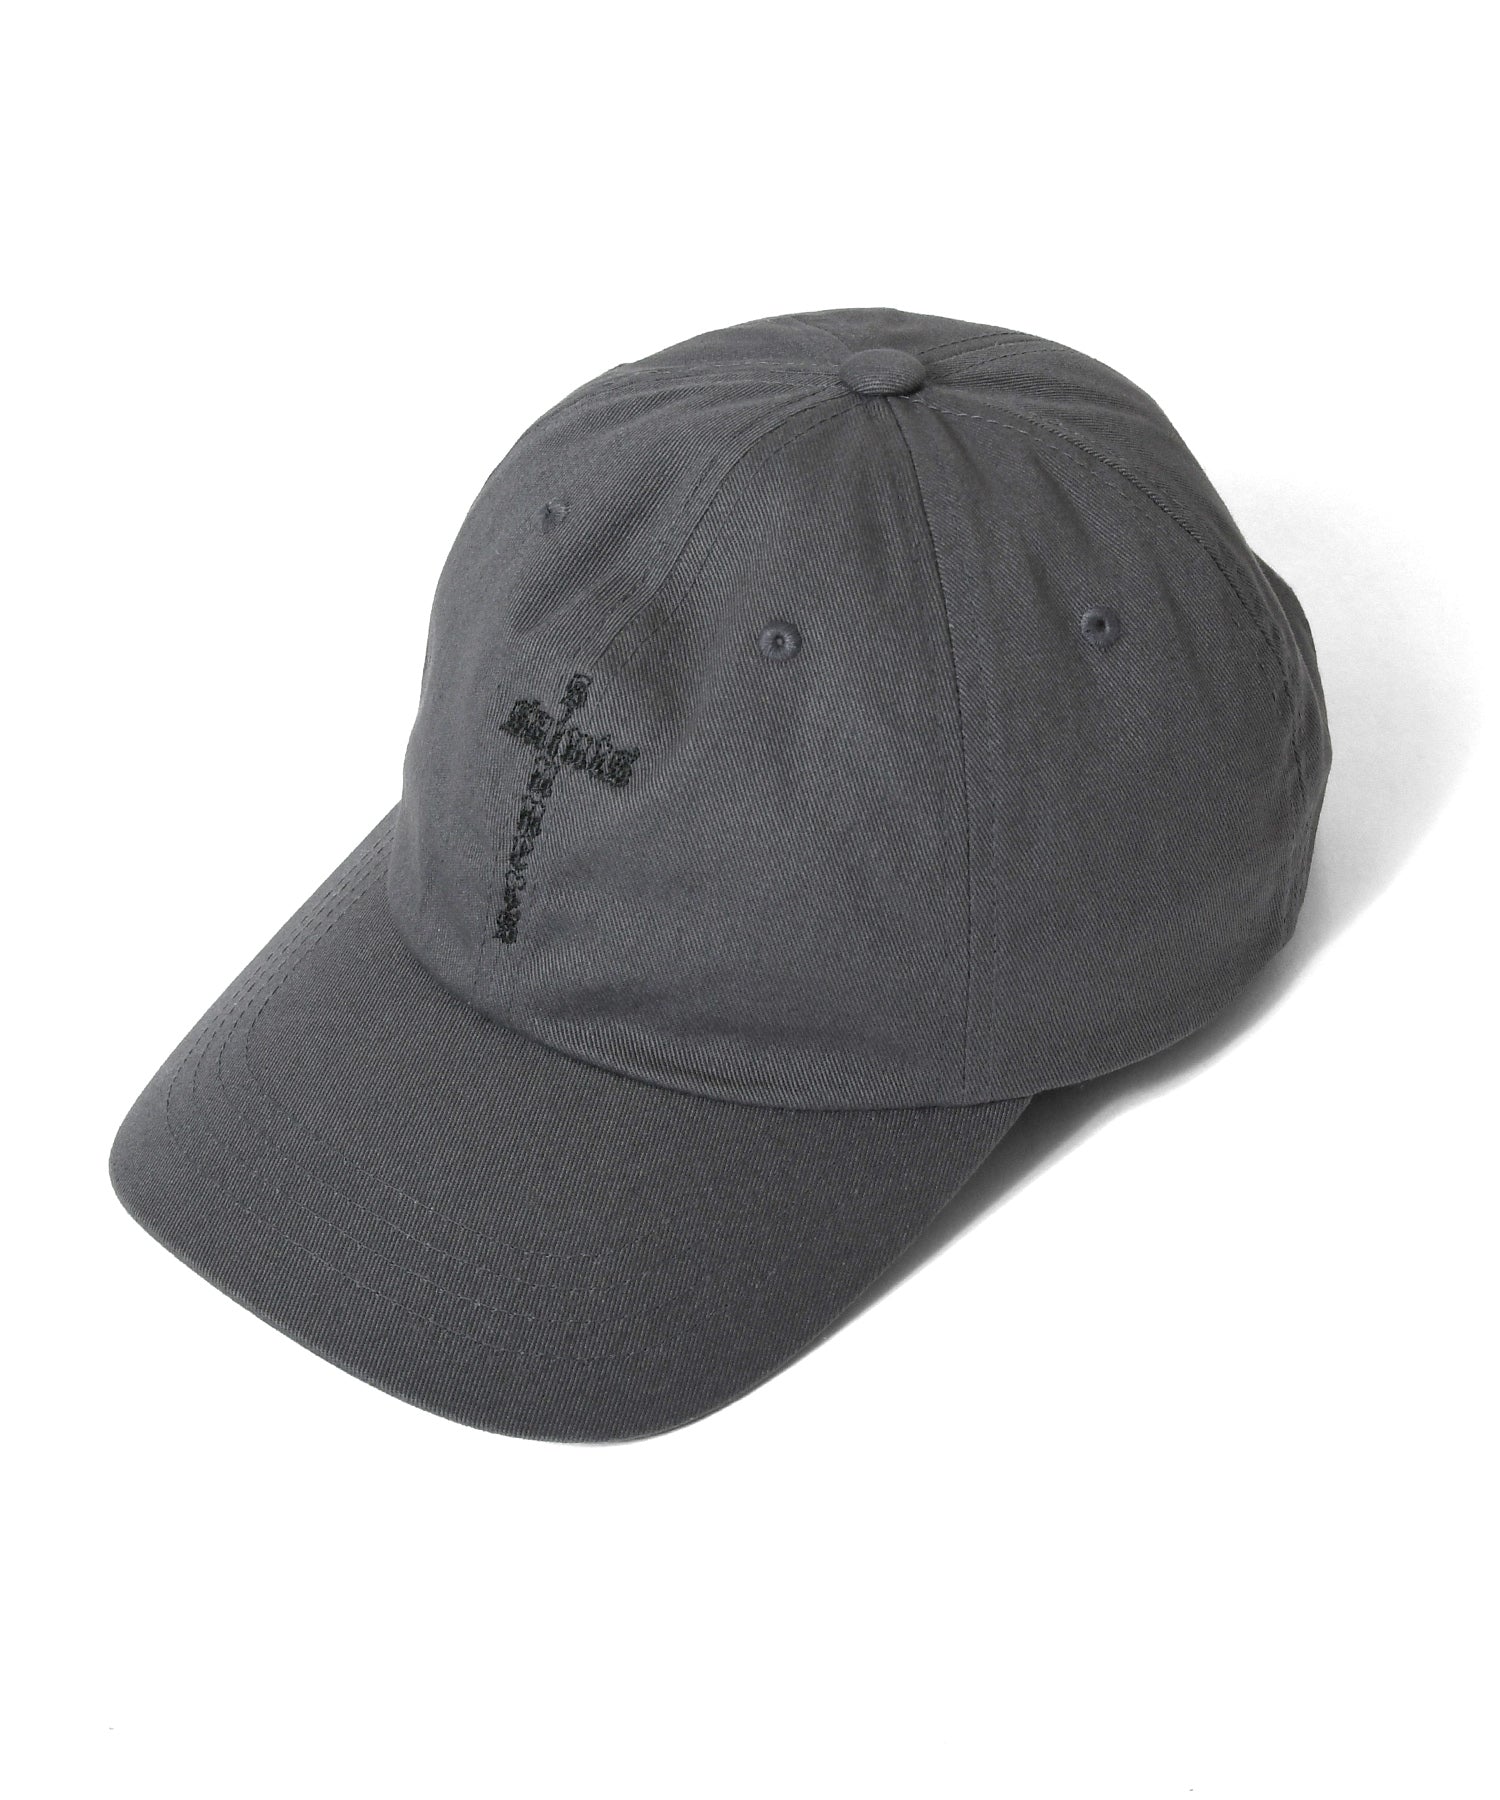 Saints & Sinners Cross Hat Grey